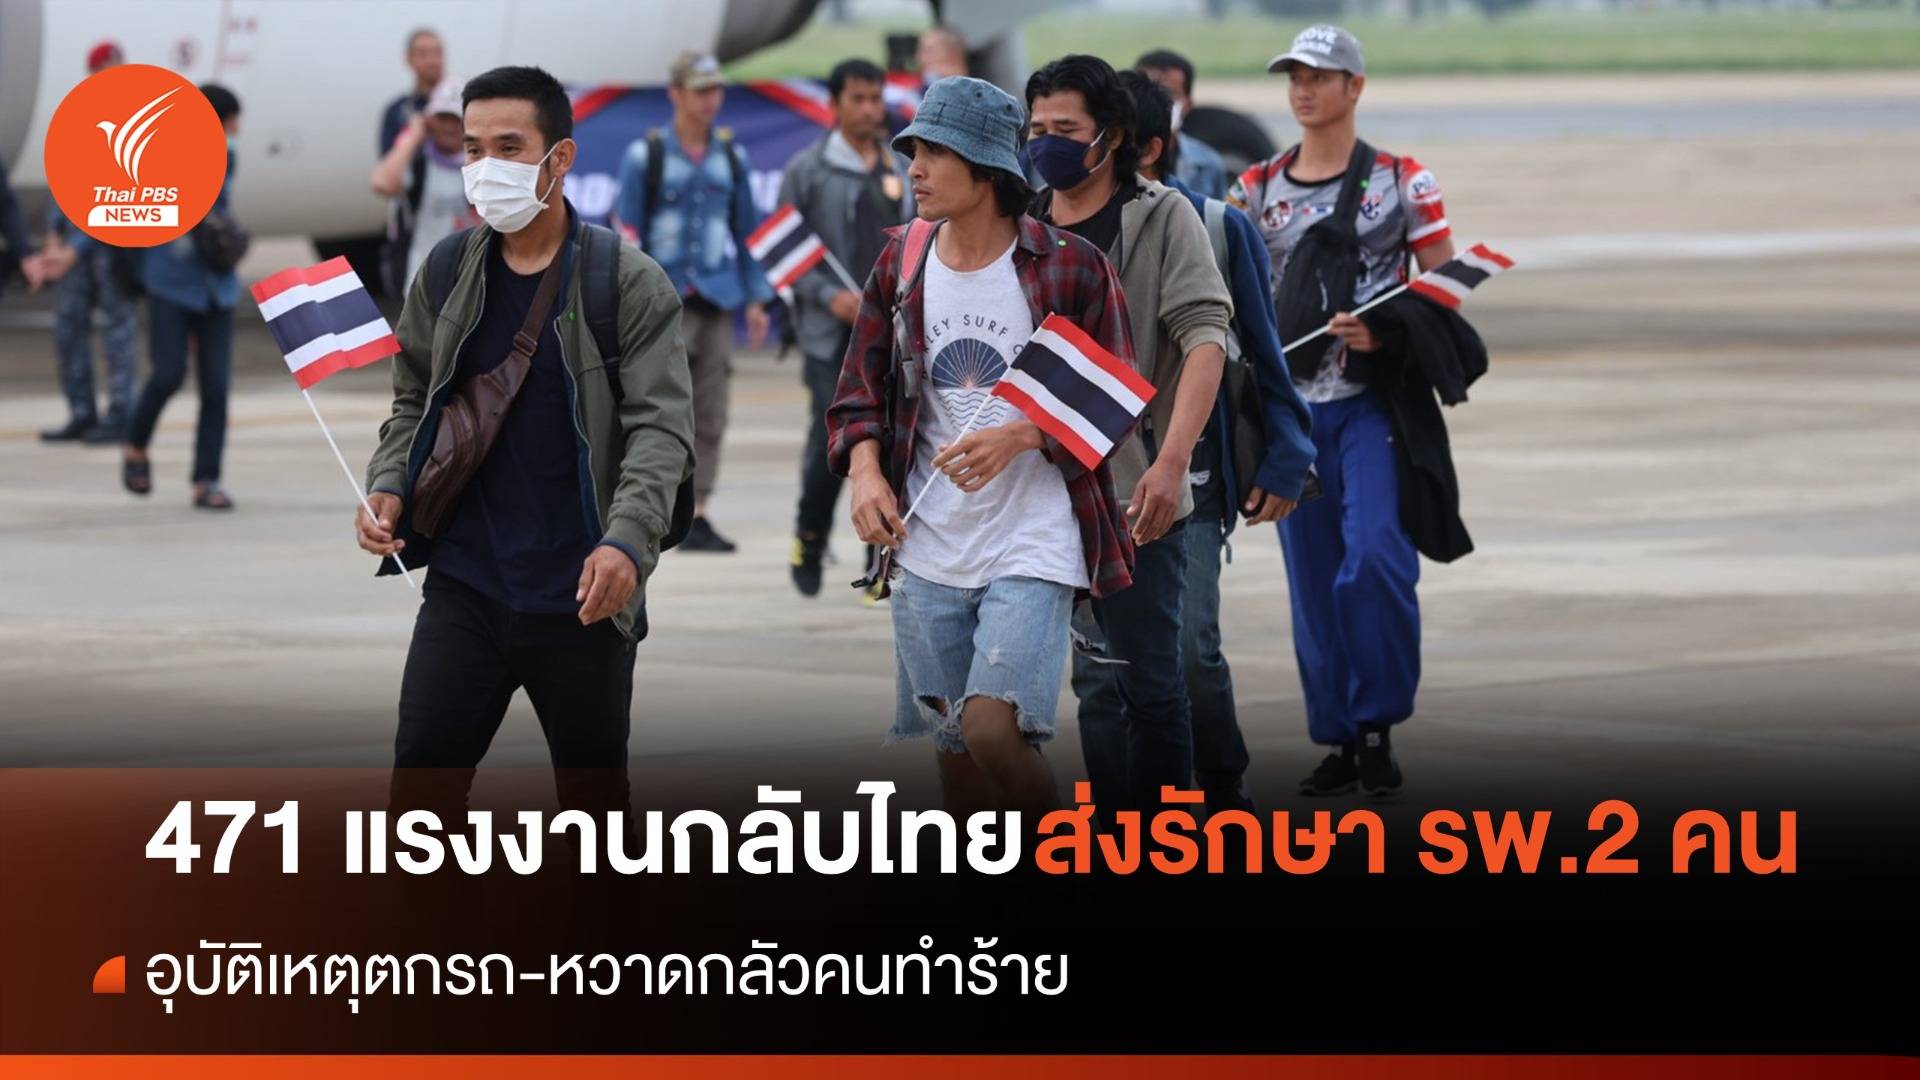 วันนี้ แรงงานไทยกลับประเทศ 471 คน ส่งรักษา รพ. 2 คน